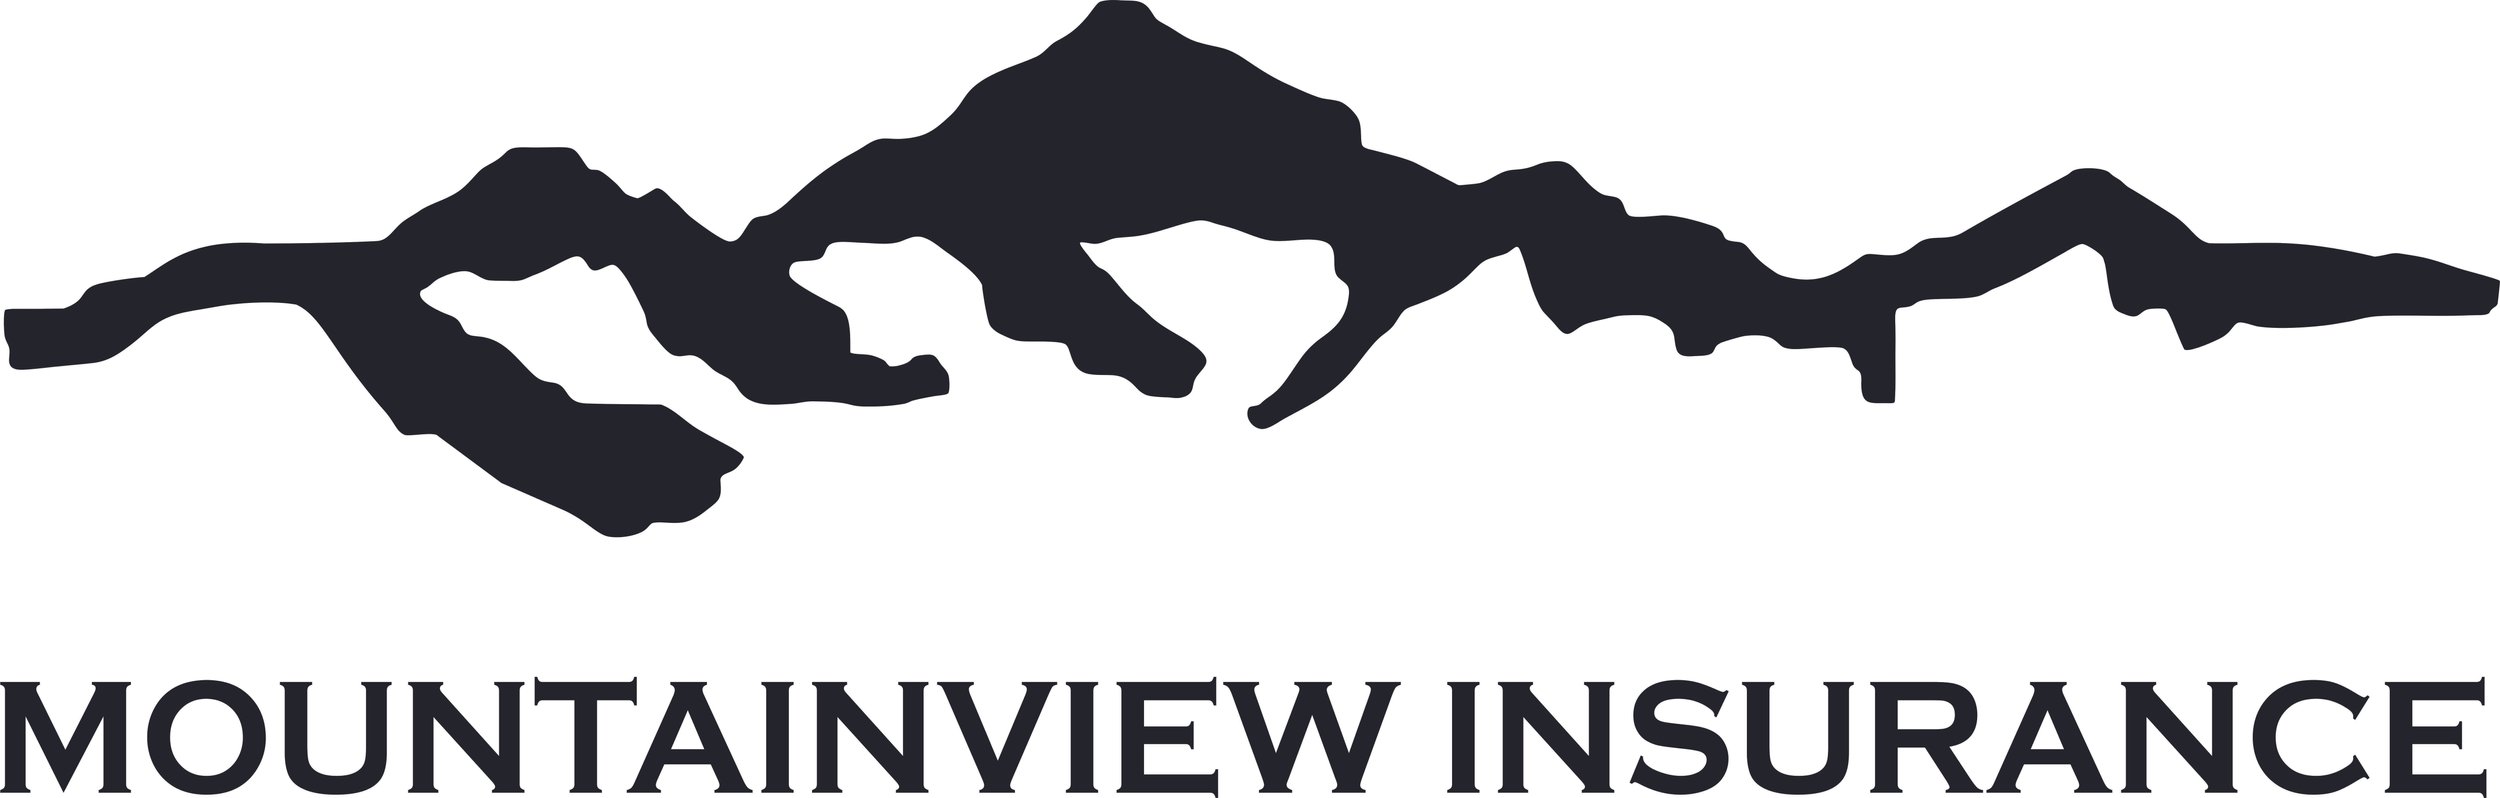 Logo -- Mtn View Insur.jpg